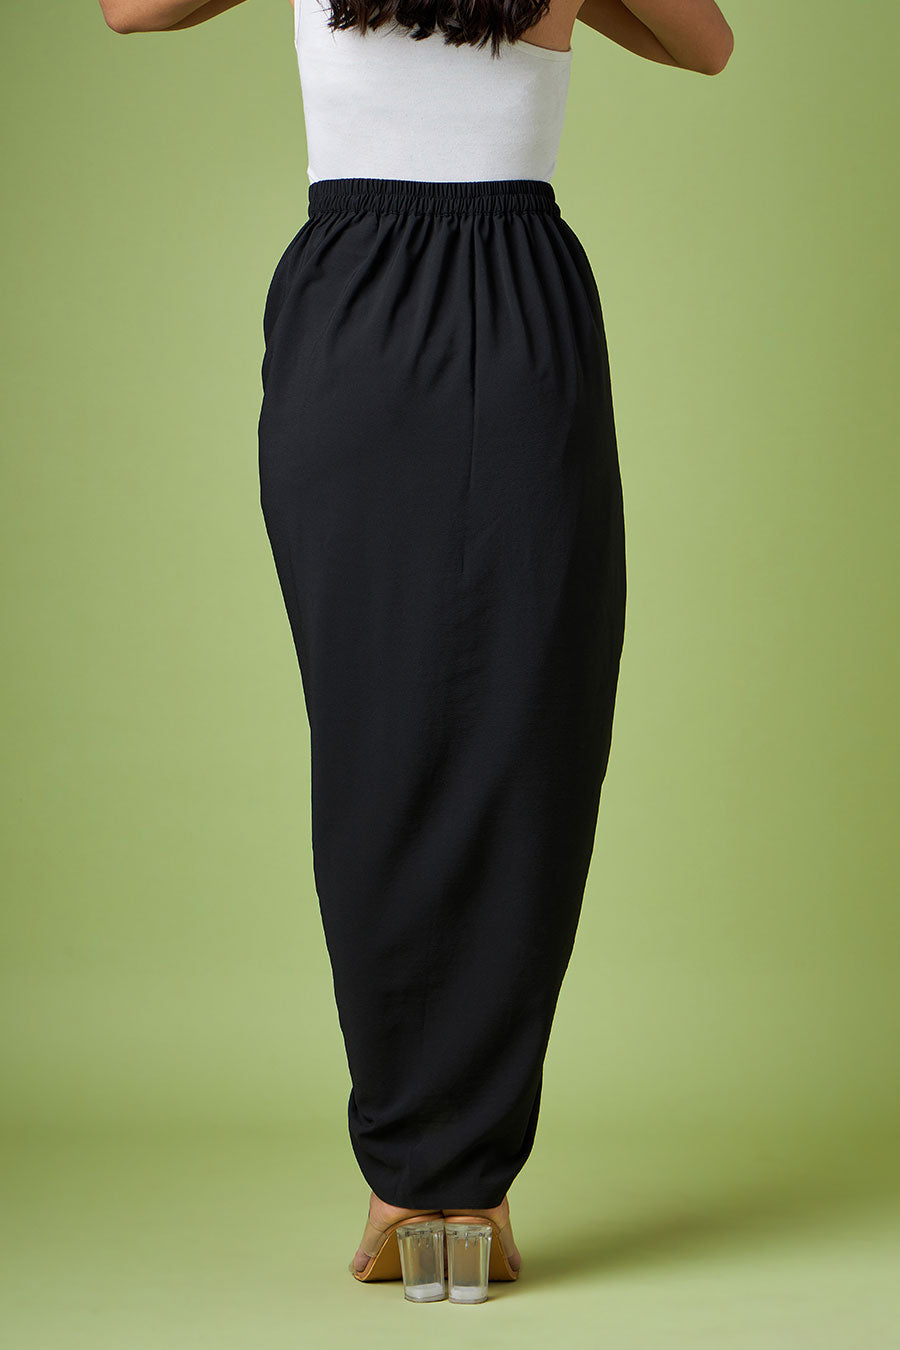 Black Drape Skirt